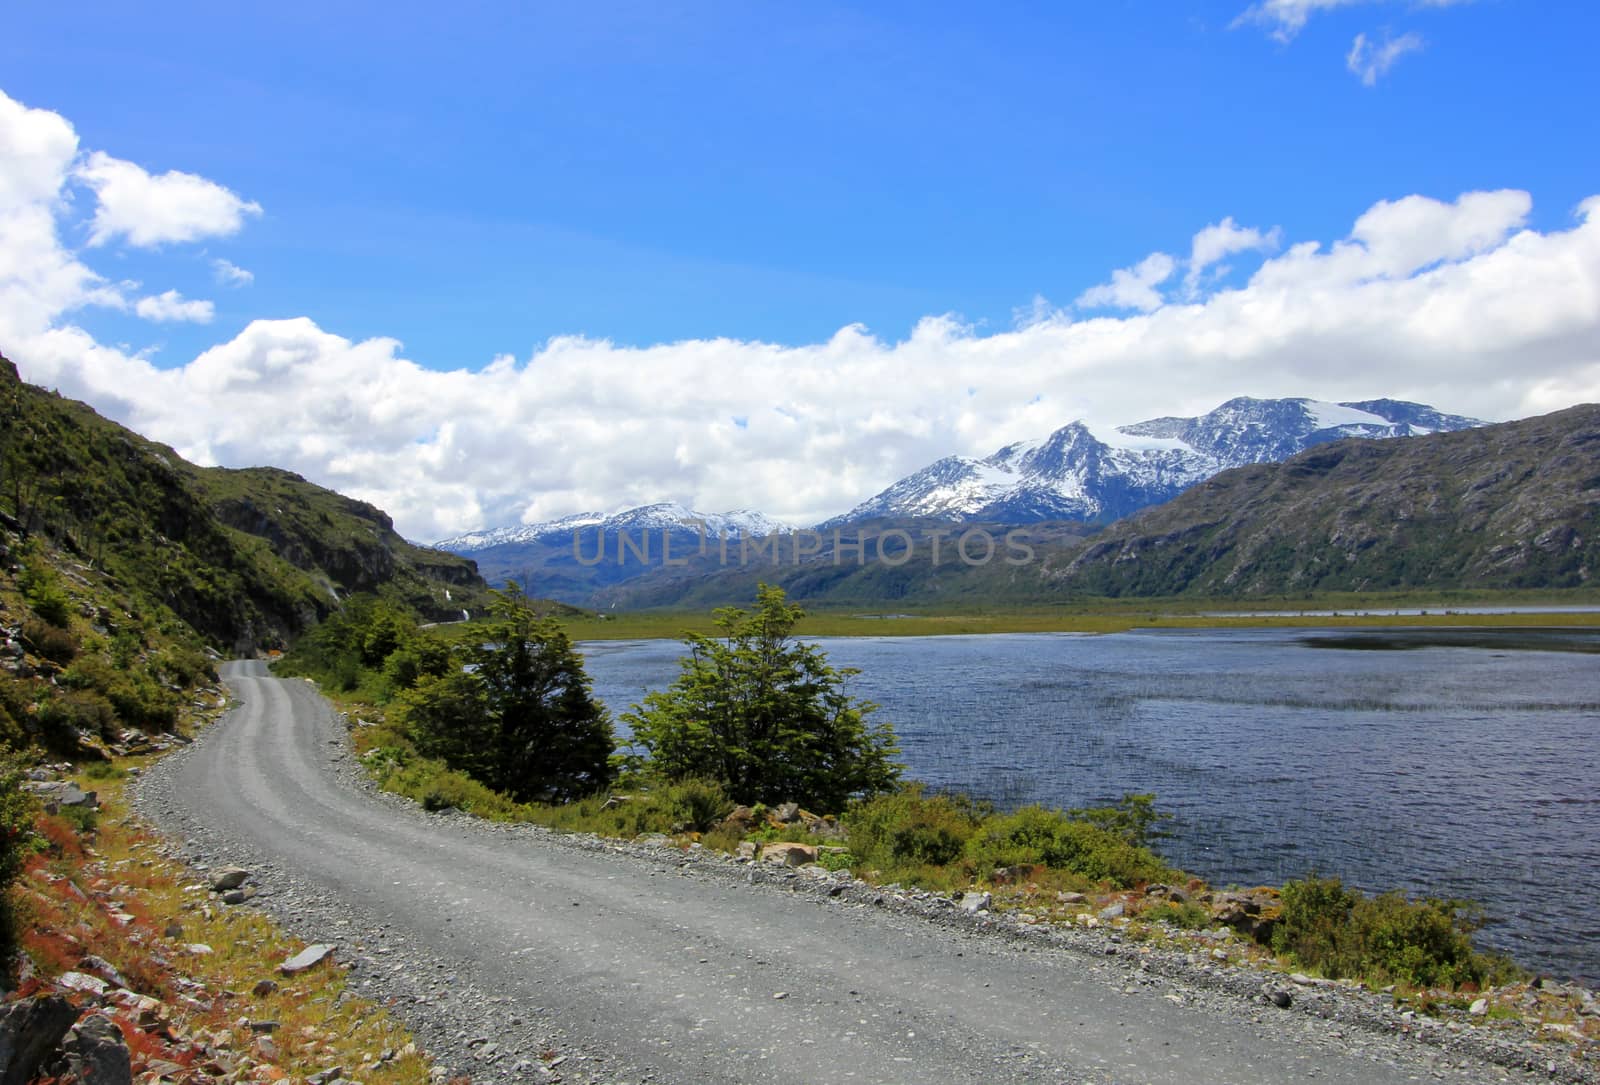 Carretera Austral highway, ruta 7 Patagonia Chile